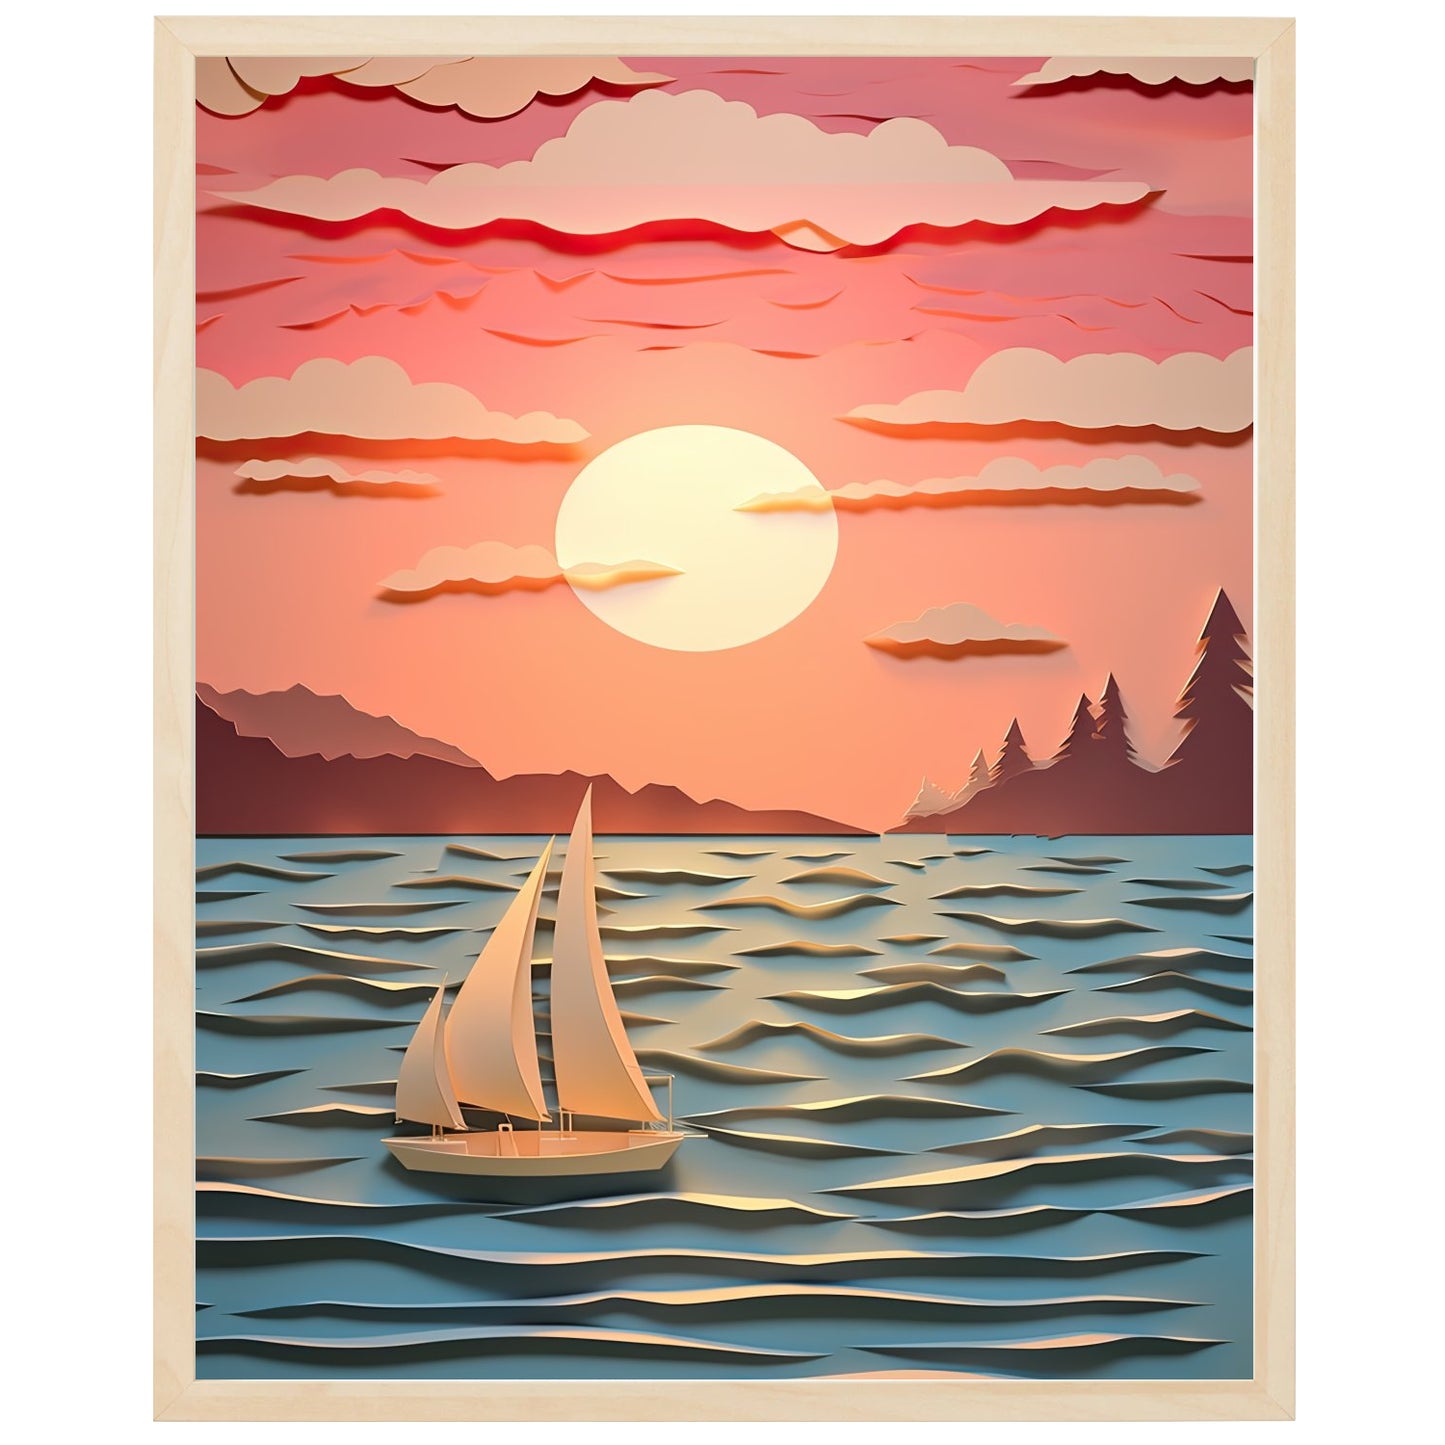 Solnedgang over havet med sejlbåde i horisonten skaber en smuk og rolig stemning med varme og strålende farver. Mørke silhuetter af sejlbådene tilføjer mystik og eventyr. Et øjeblik med æstetisk nydelse og rejselyst. Drøm dig væk til fjerne destinationer.